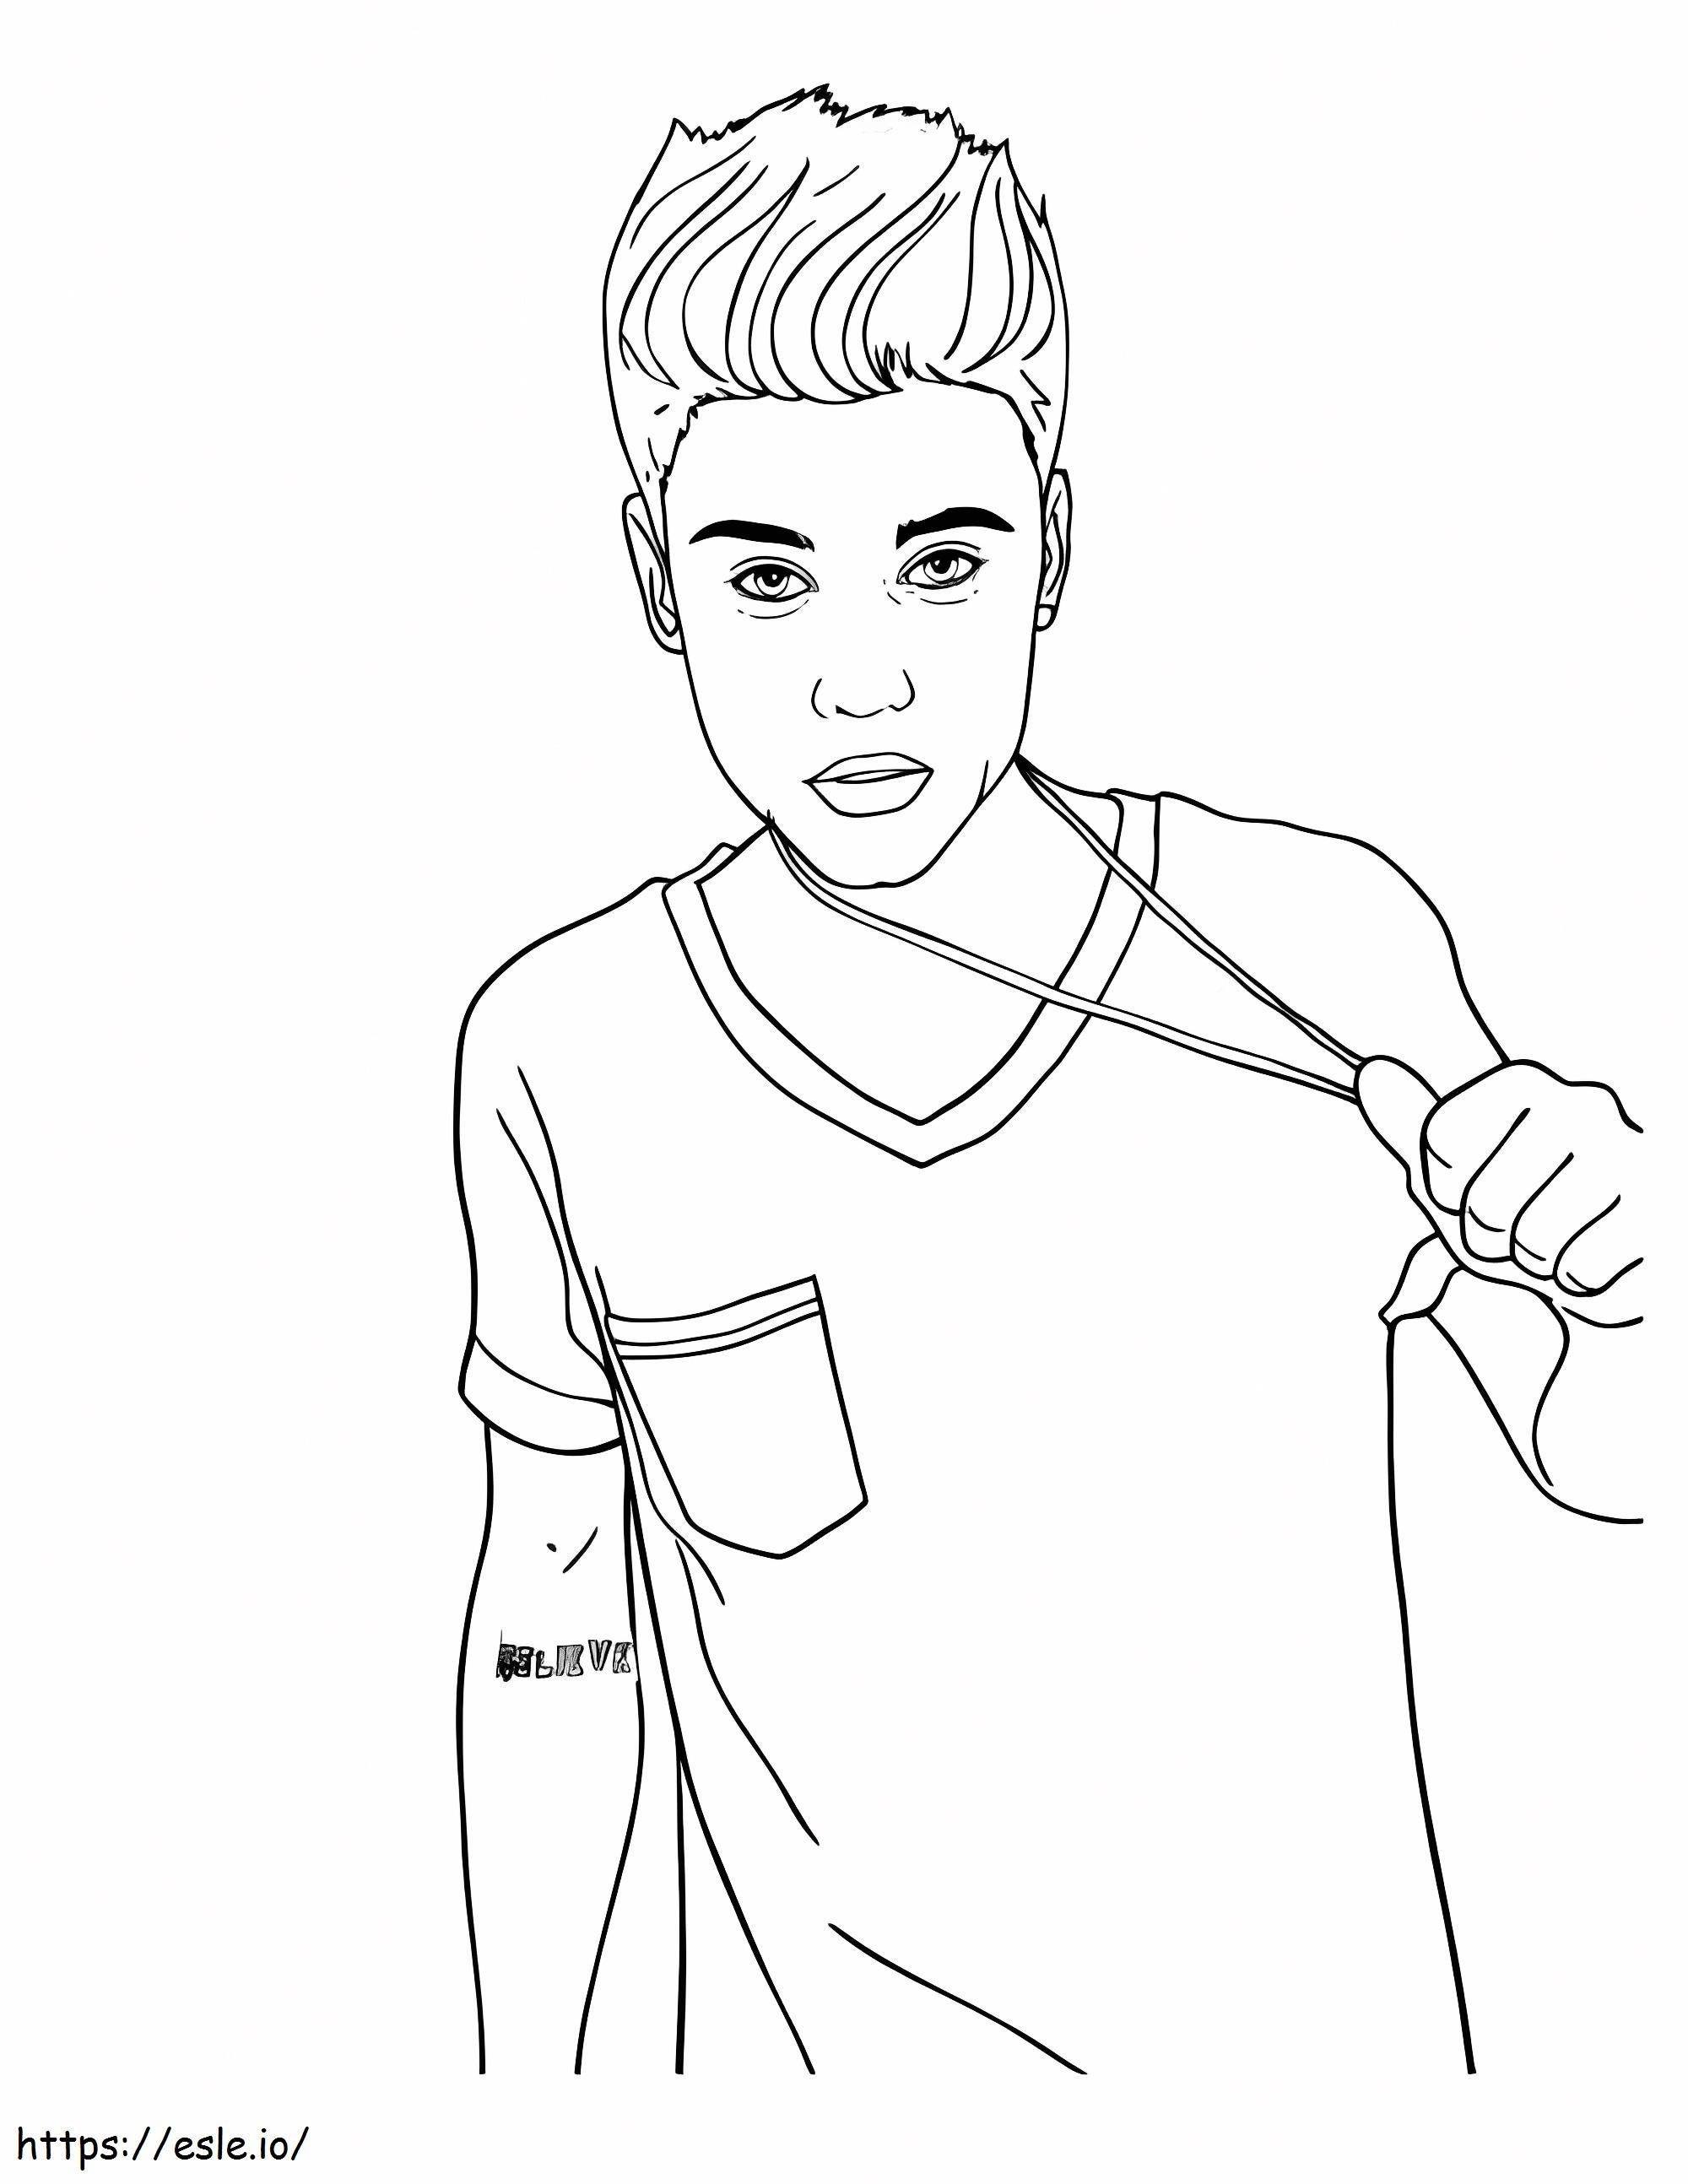 Justin Bieber mit Undercut-Frisur ausmalbilder